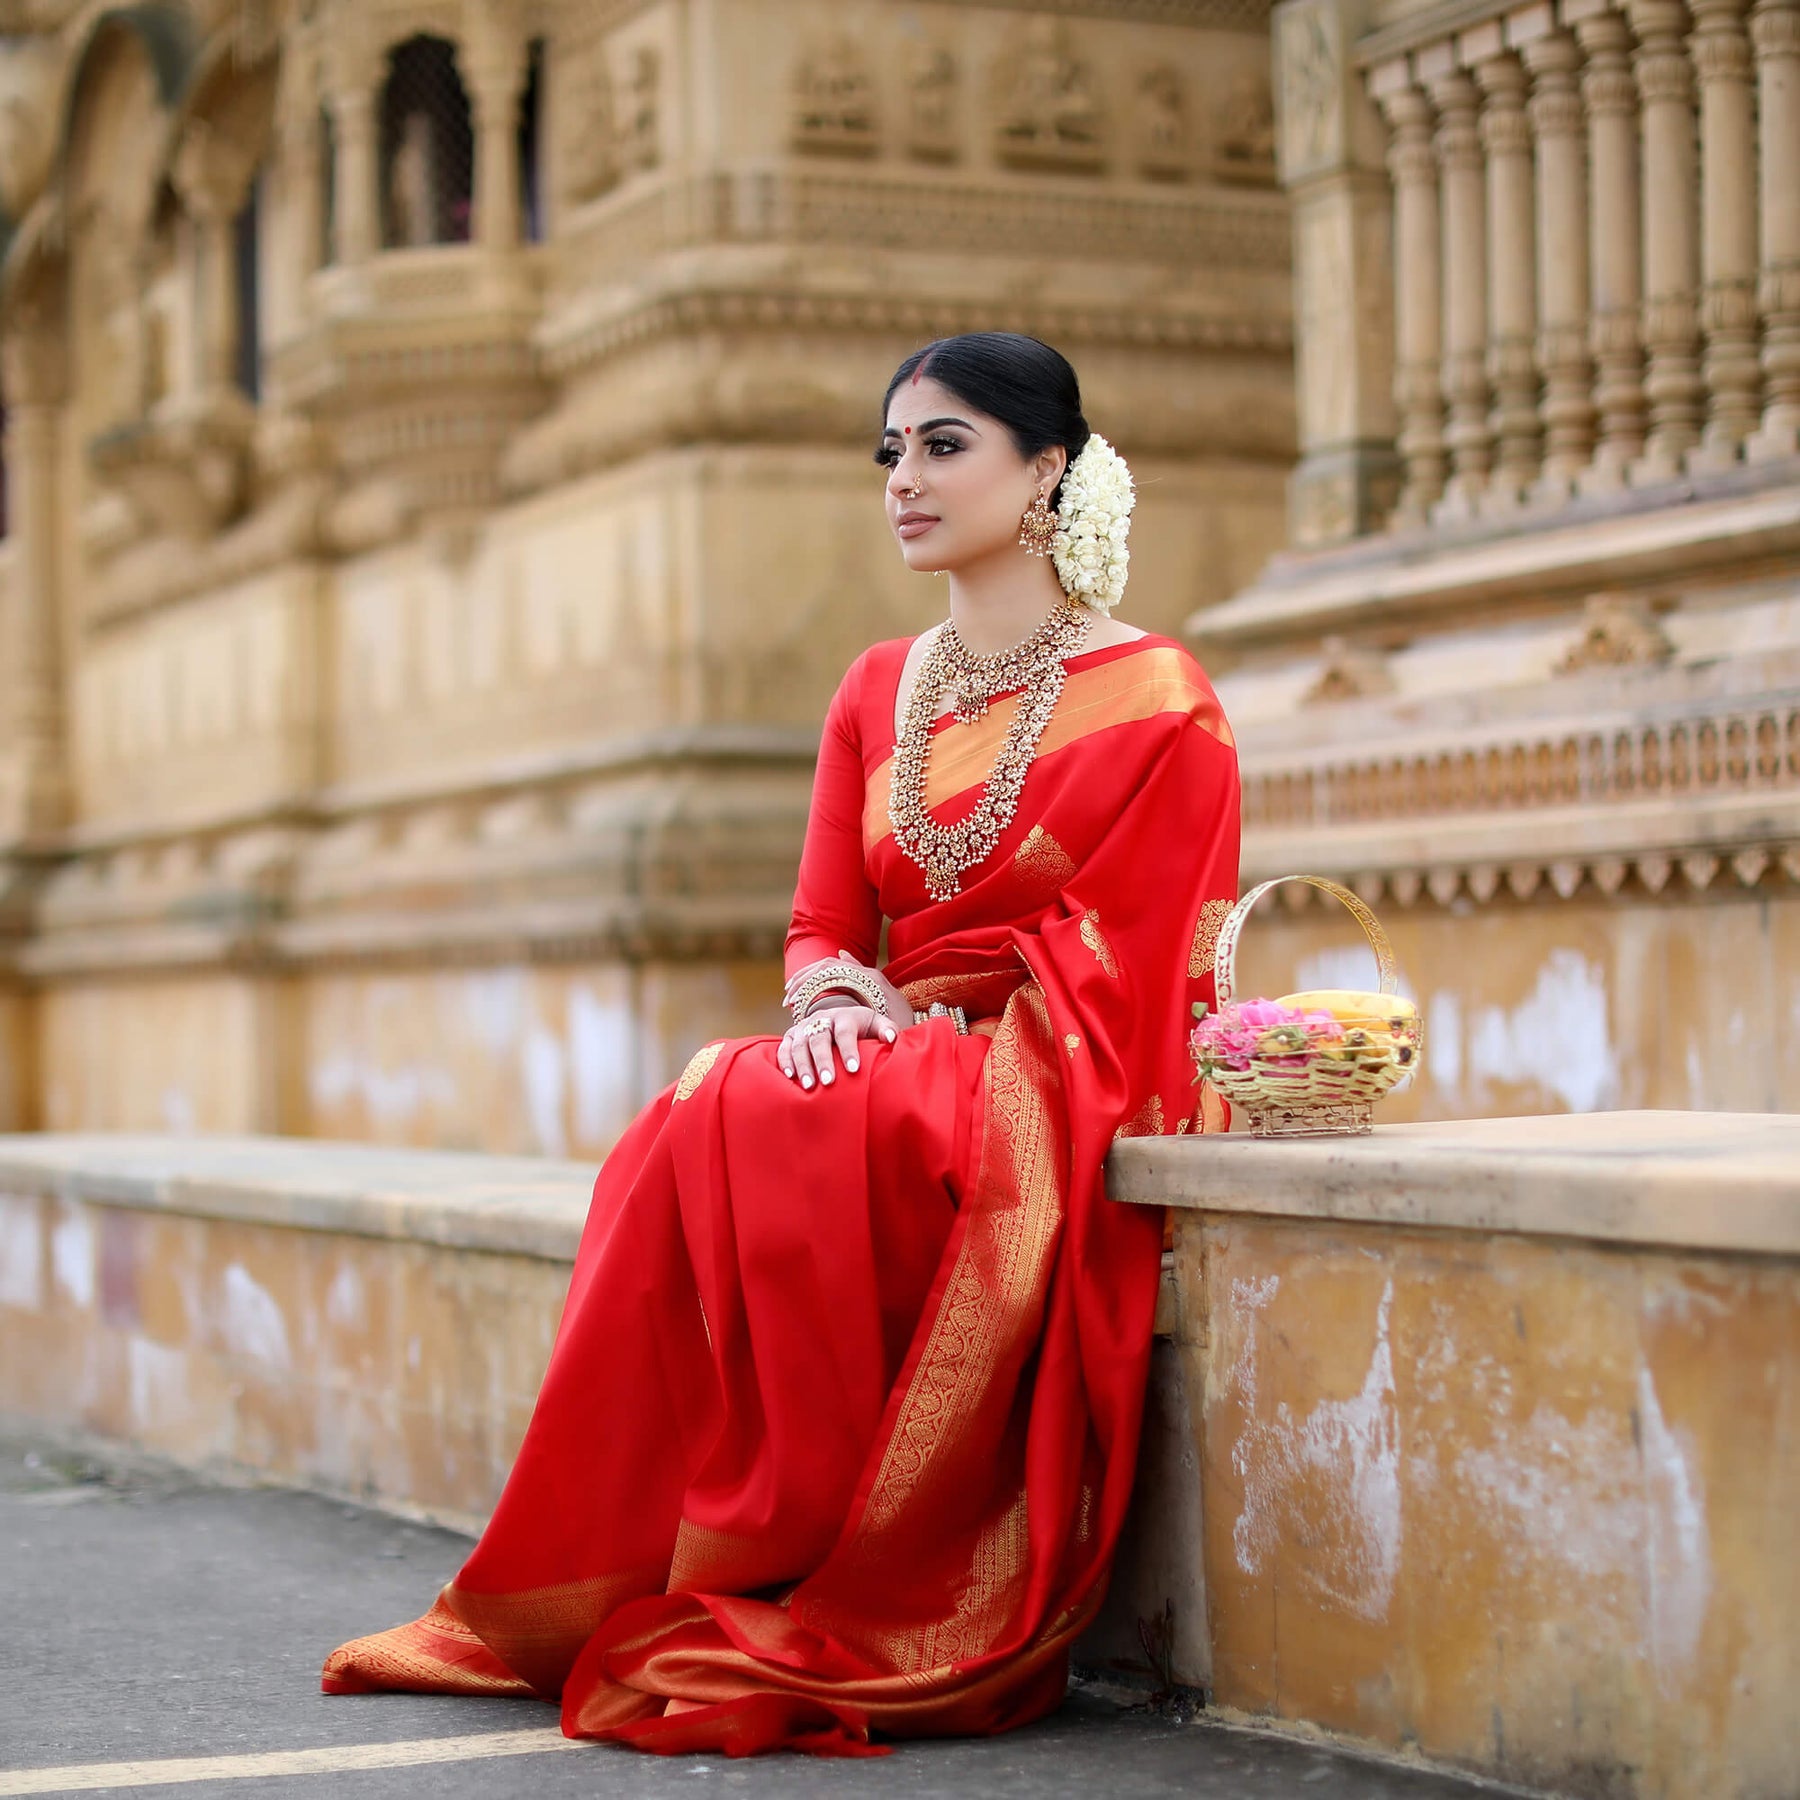 The Exquisite Creation of a Sari